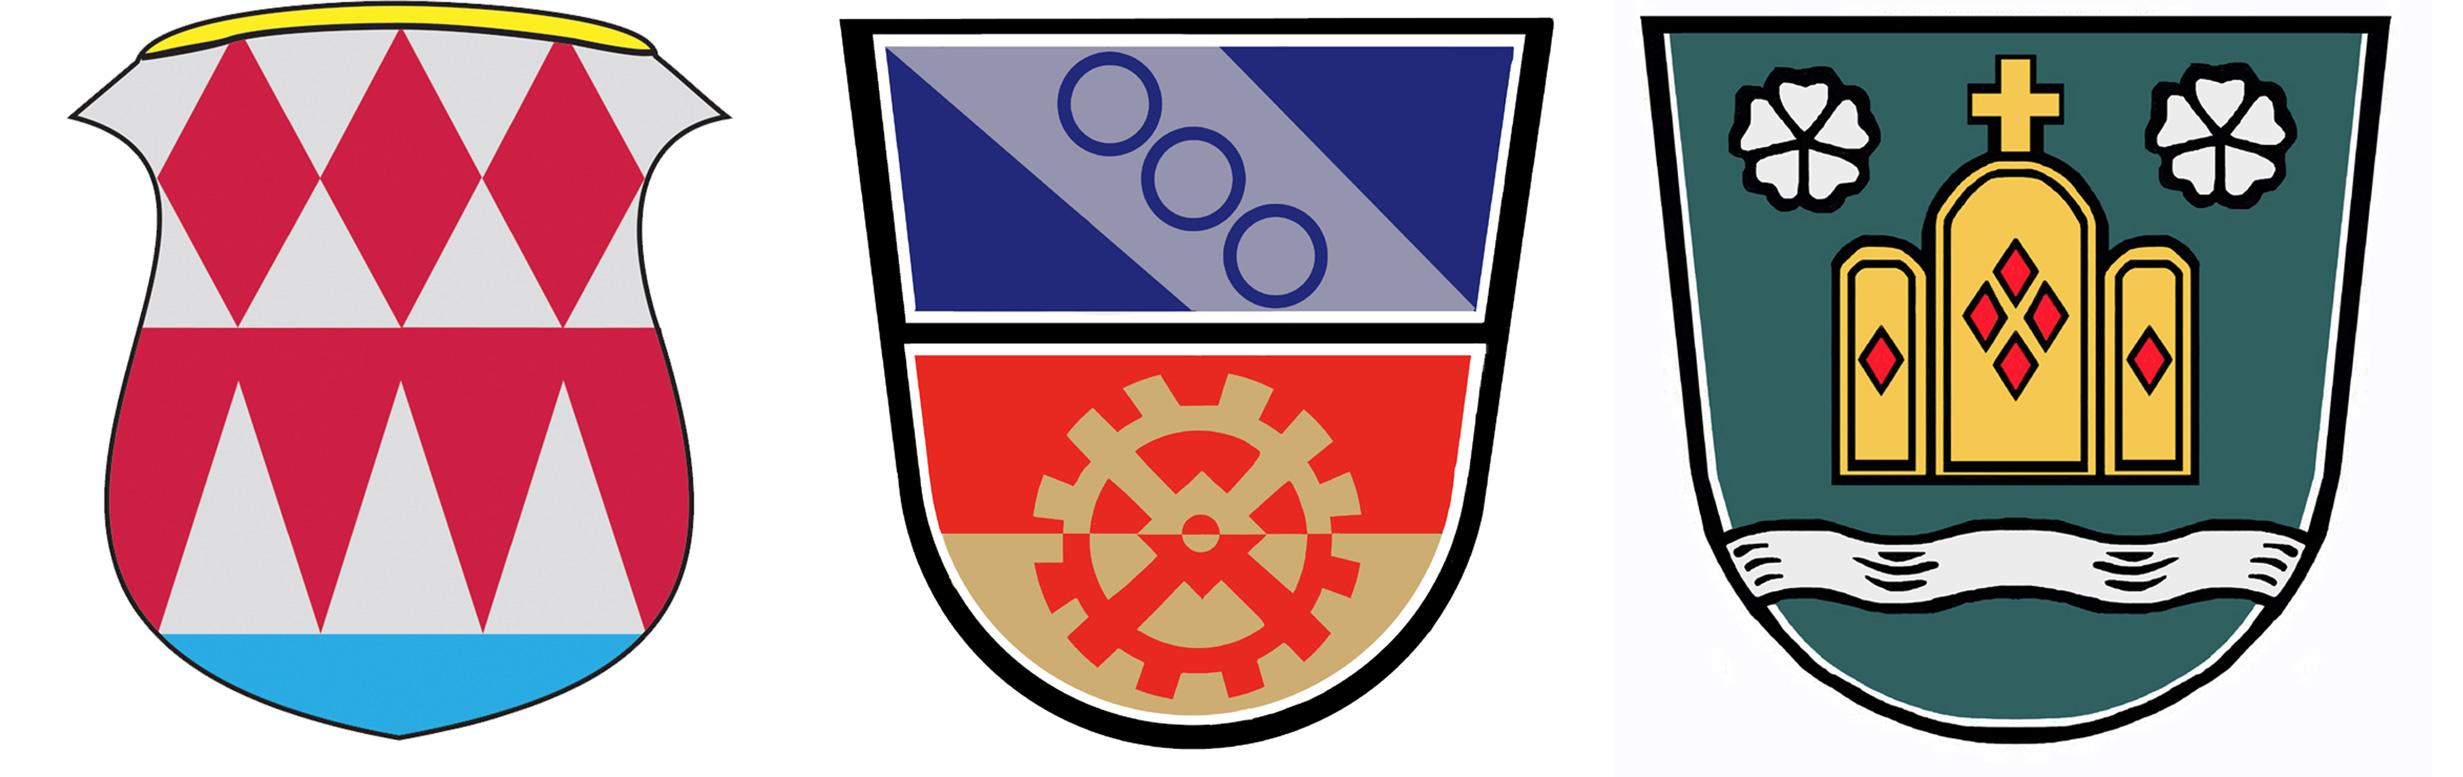 Logo Verwaltungsgemeinschaft Gemünden am Main